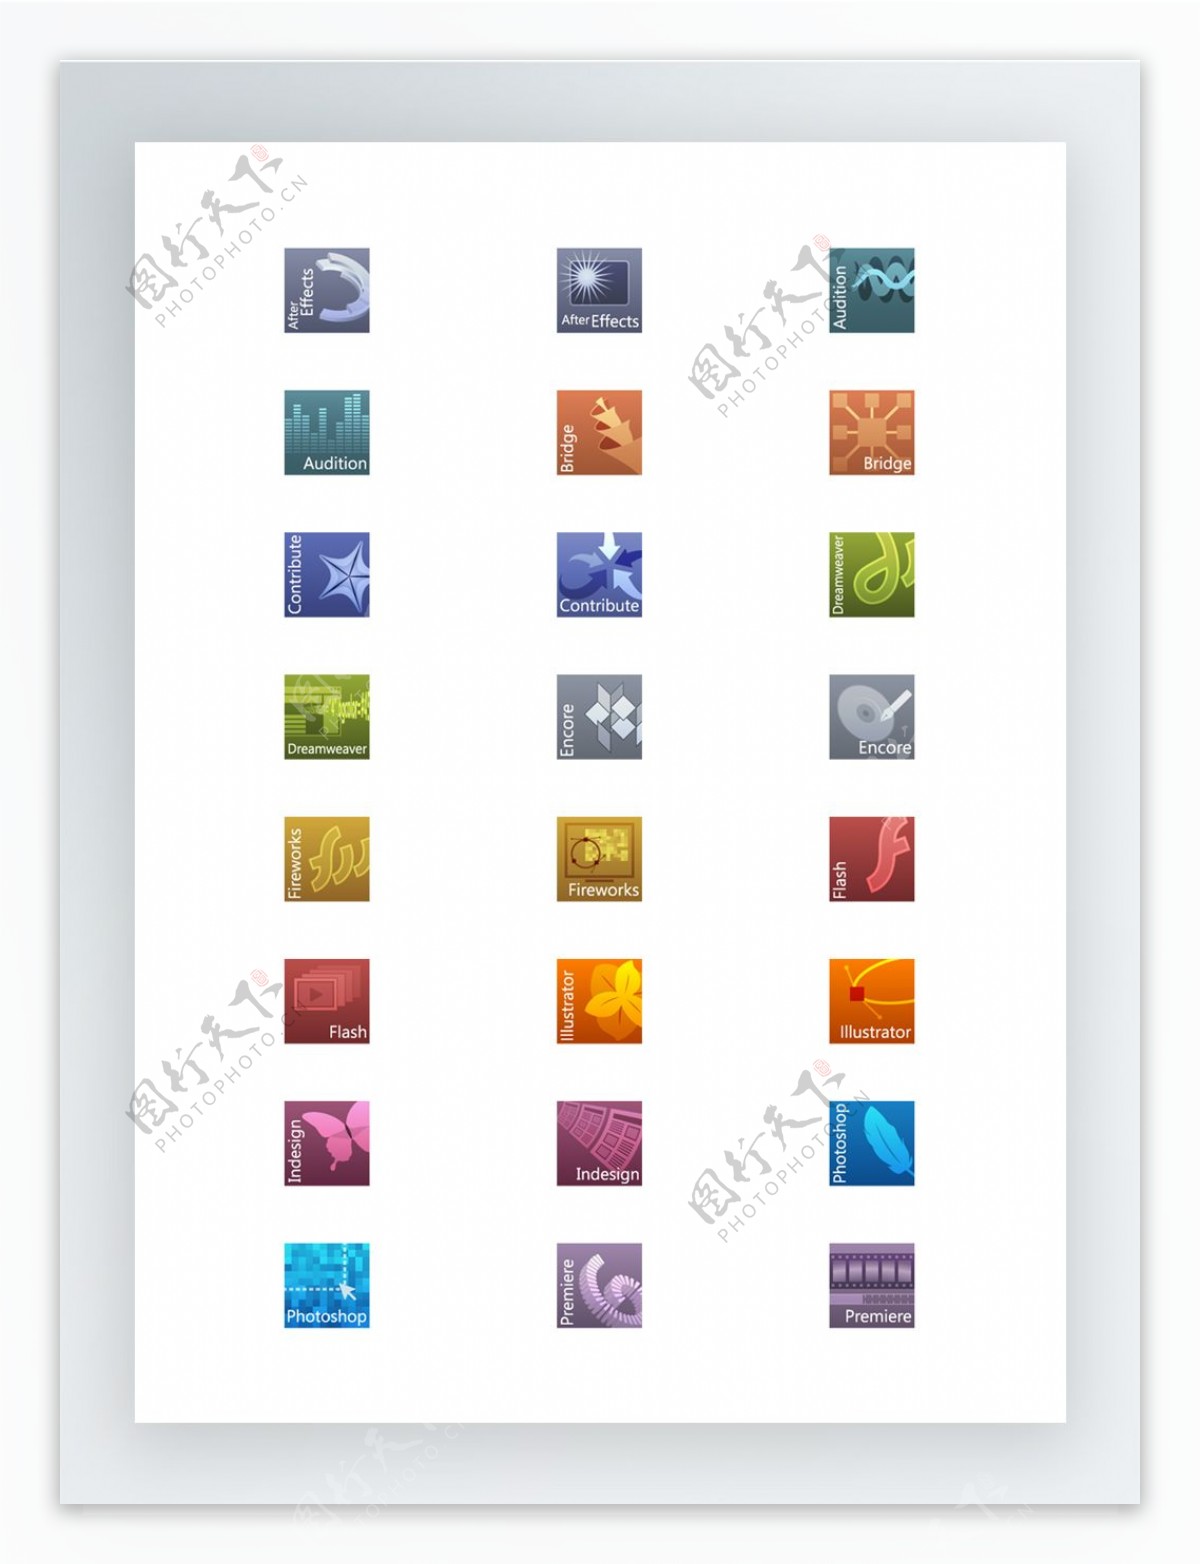 漂亮的Adobe产品图标集